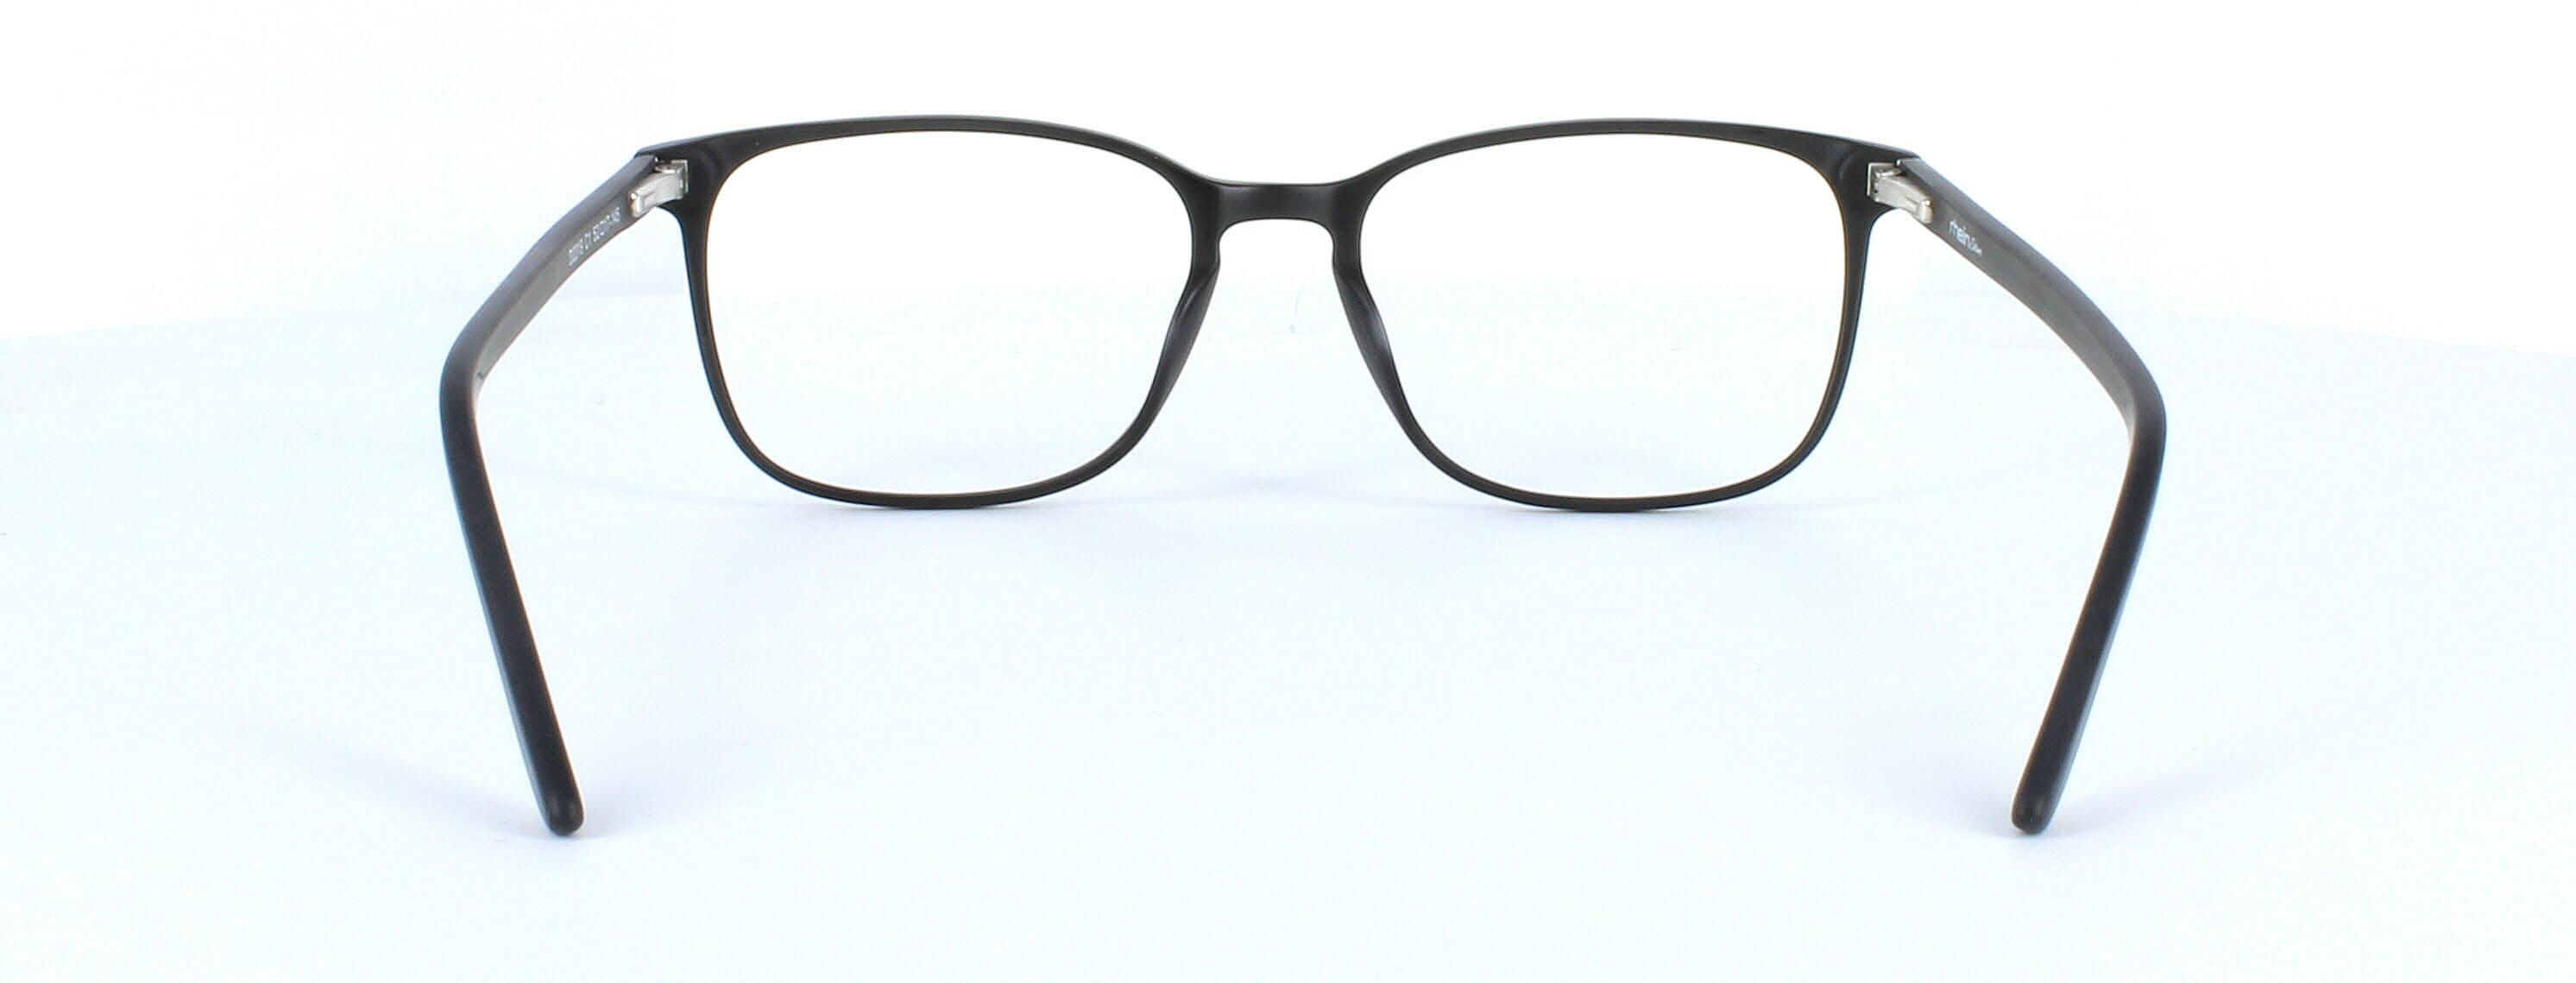 Farrington - unisex plastic glasses frame in matt black with rectangular lens shape and sprung hinge temple - image 3